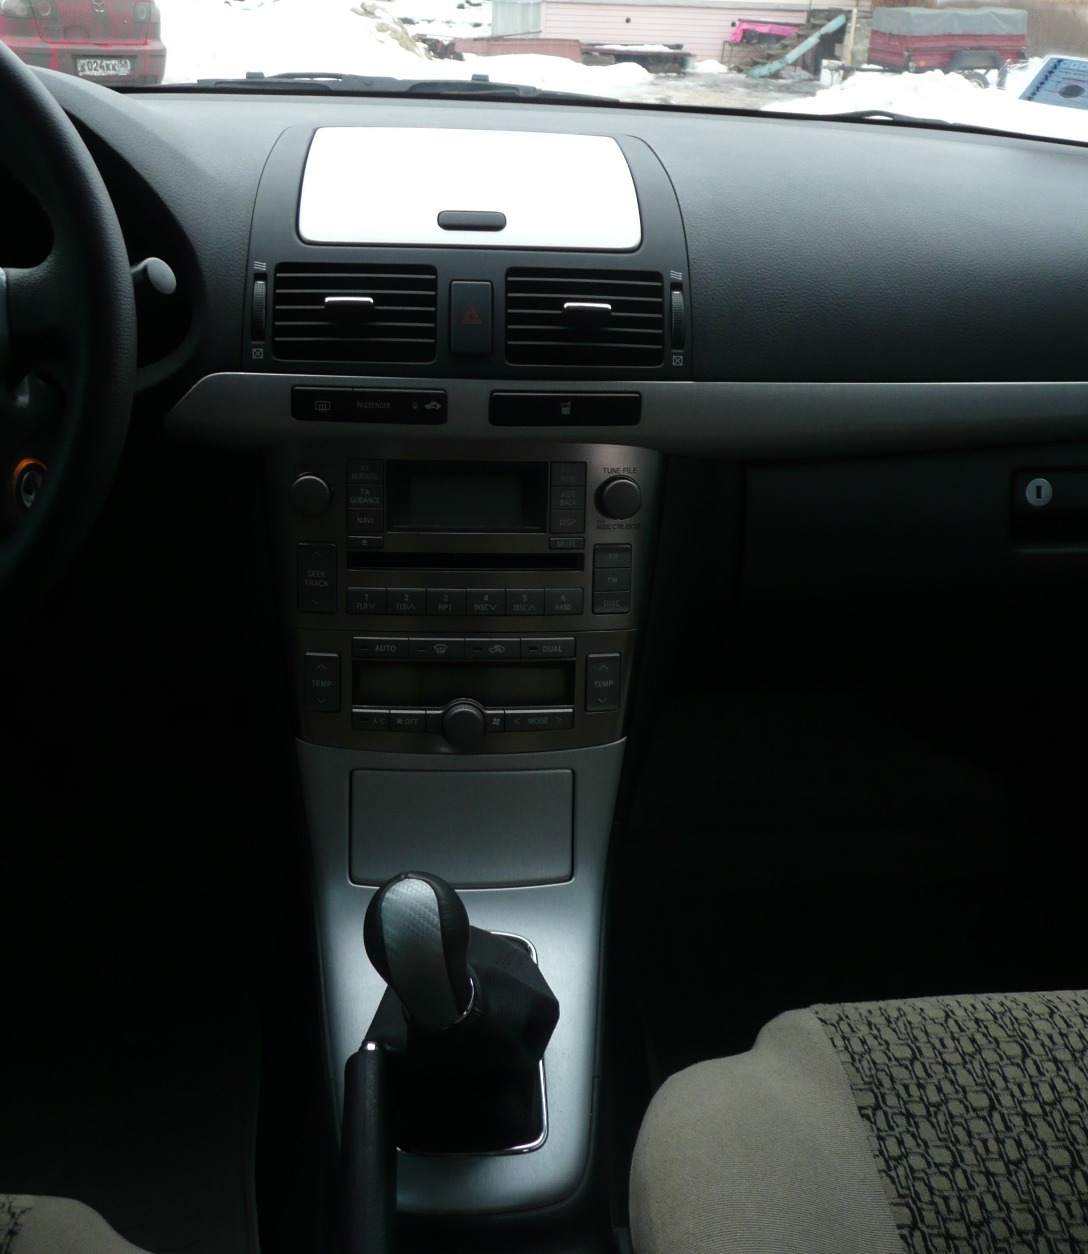 gtCarbon 3Dgt Toyota Avensis 18 2008